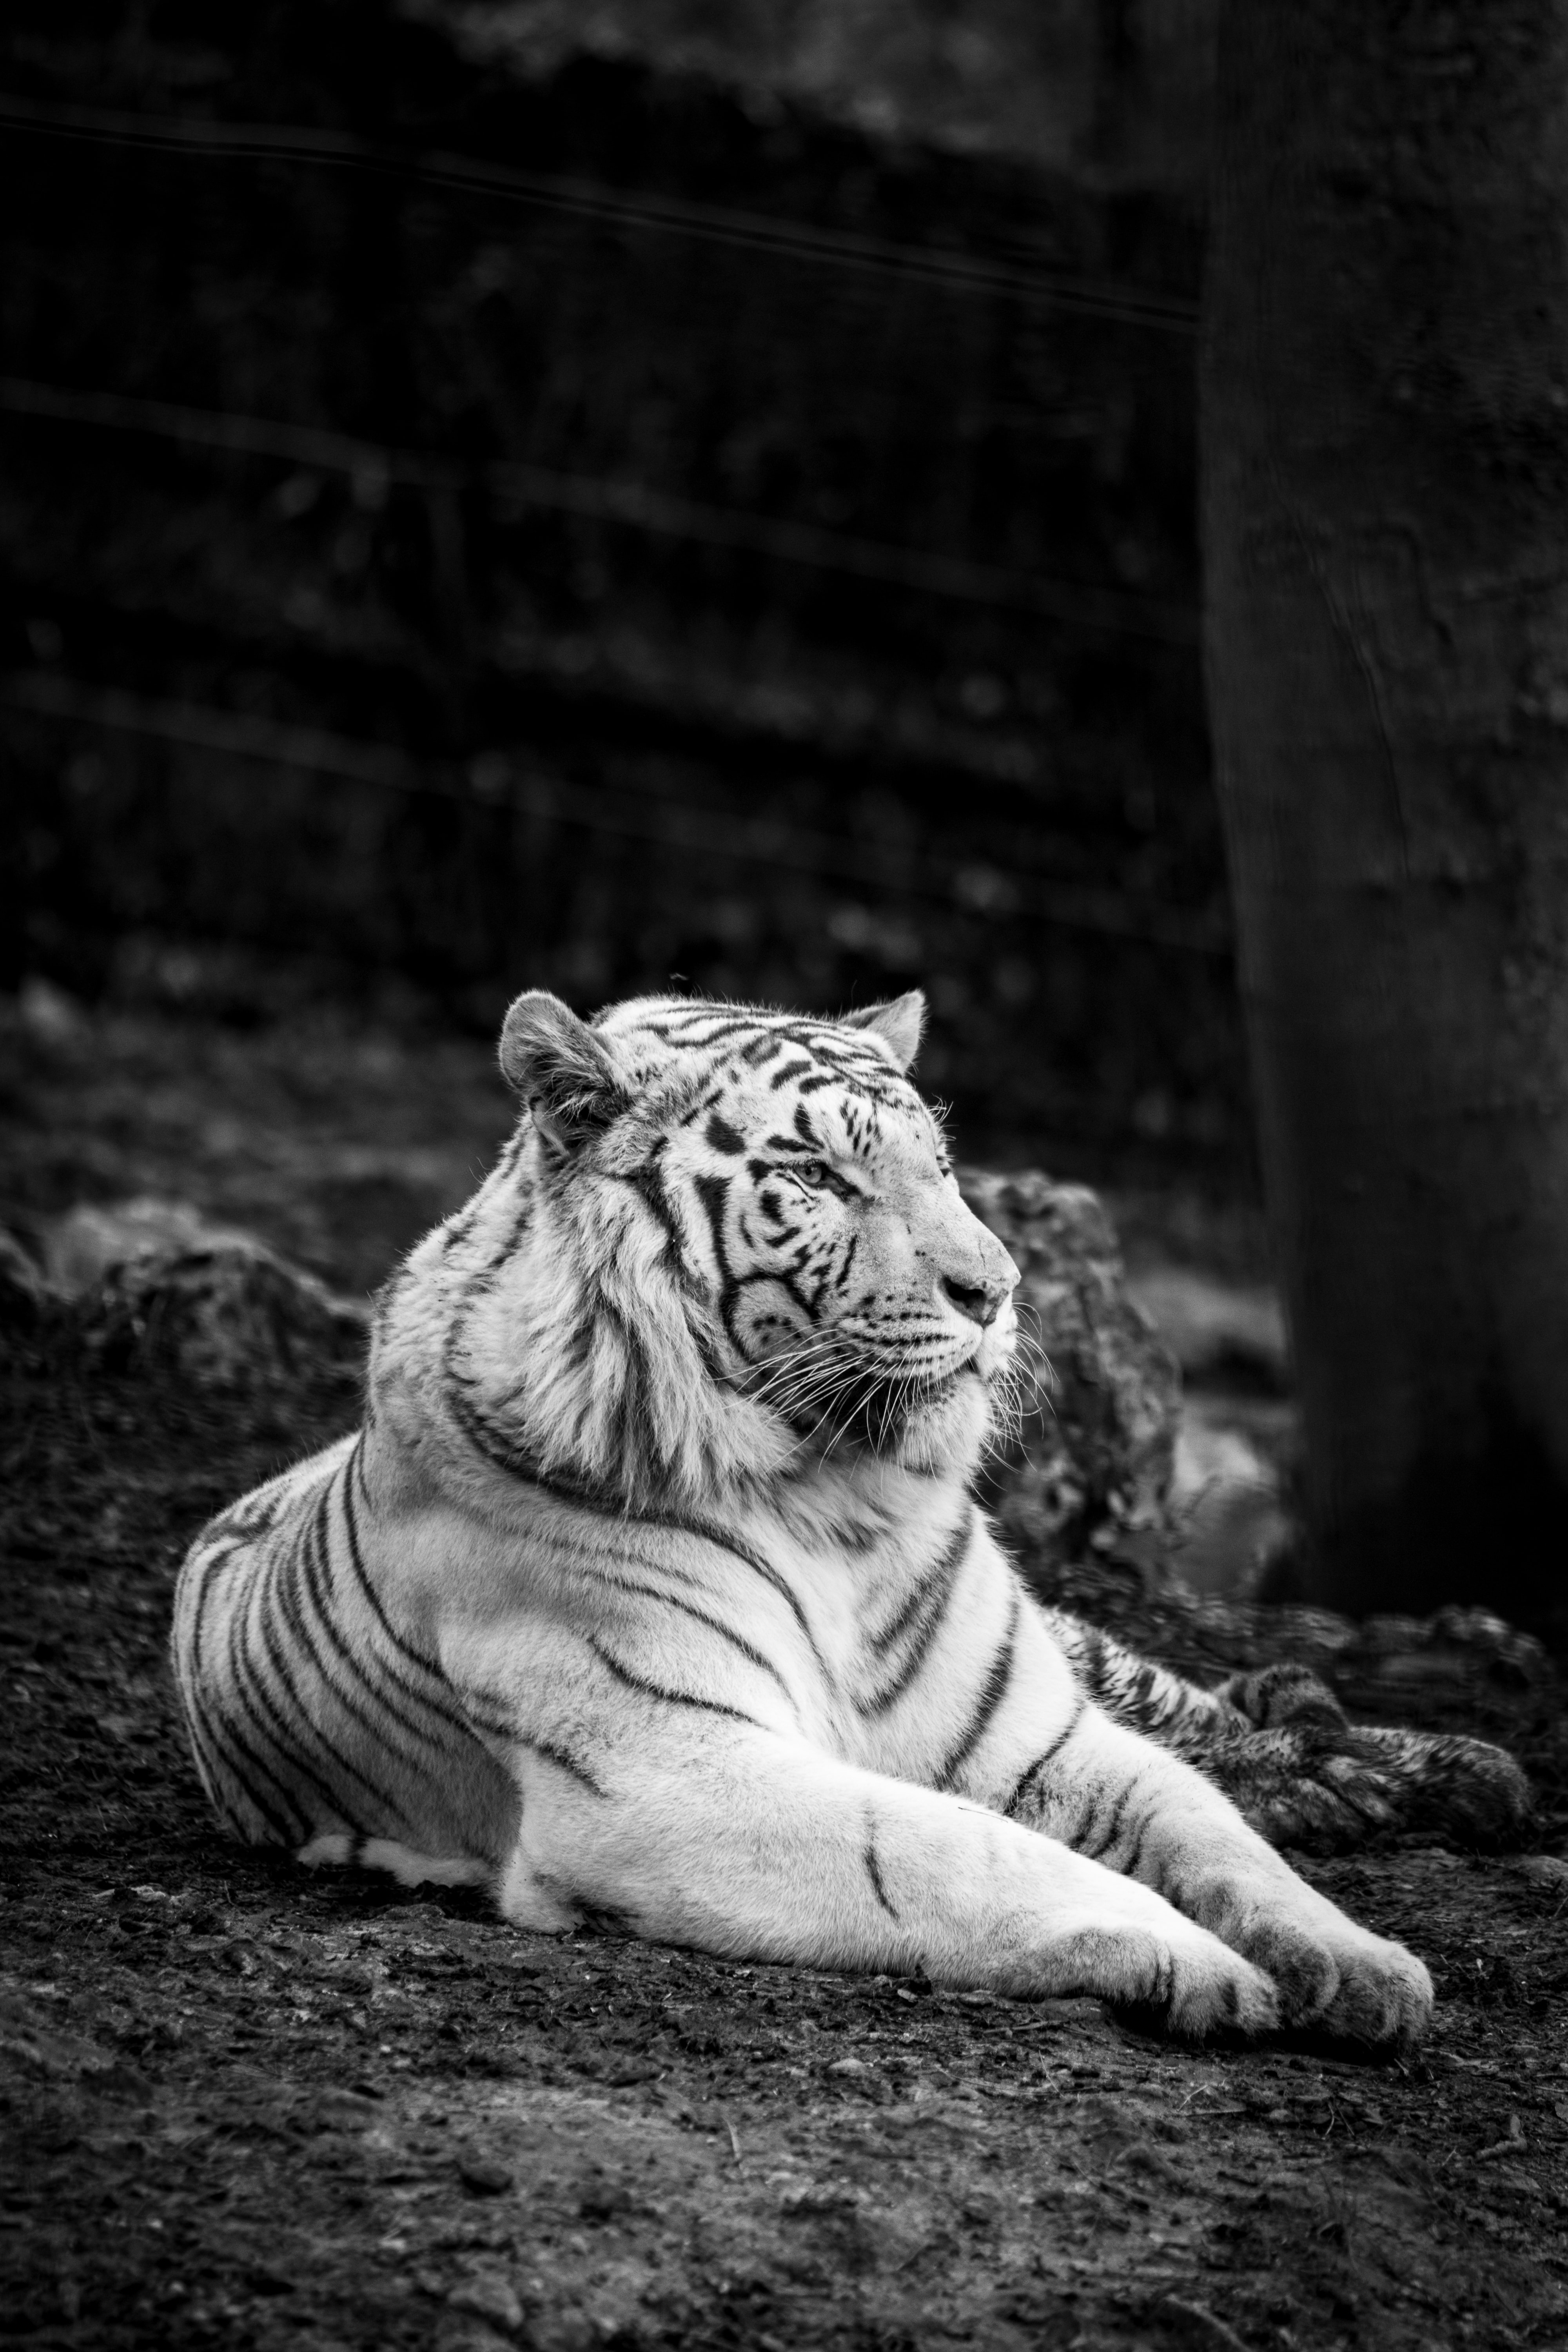 Скачать обои Бенгальский Тигр на телефон бесплатно